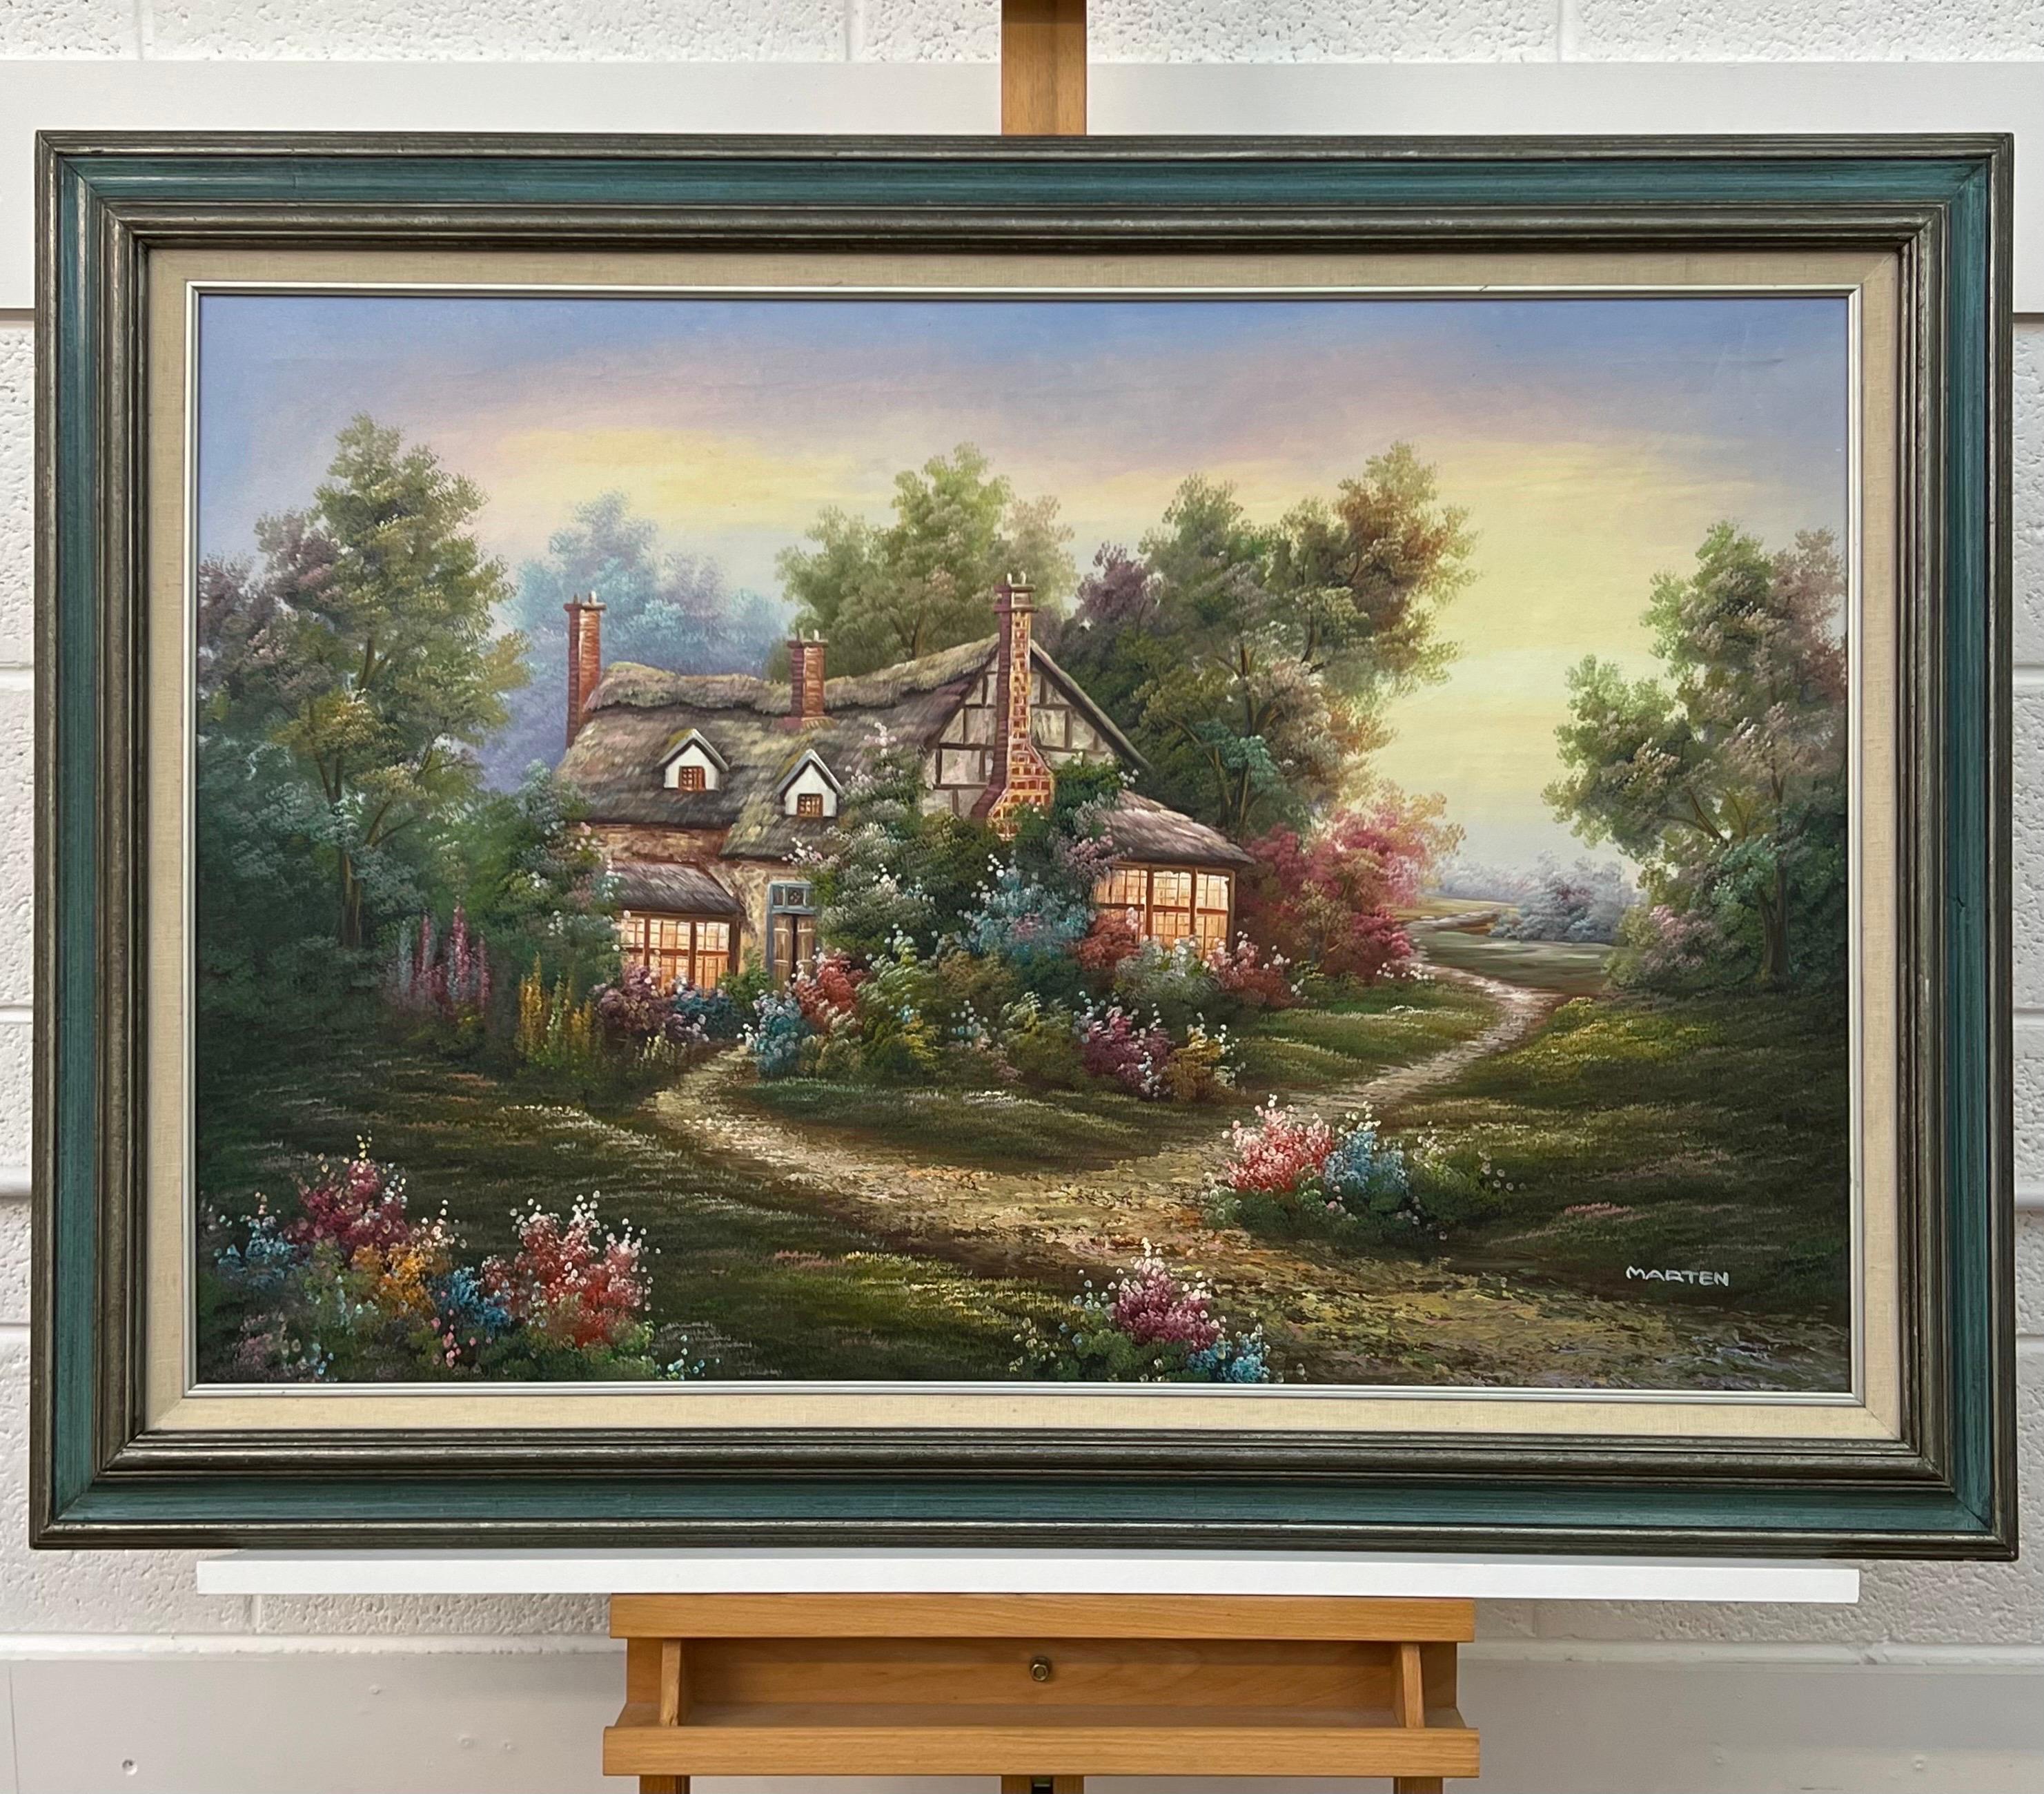 Vintage Ölgemälde von Fantasy Cottage in den Wäldern mit Blumen & Gärten (Surrealismus), Painting, von Marten